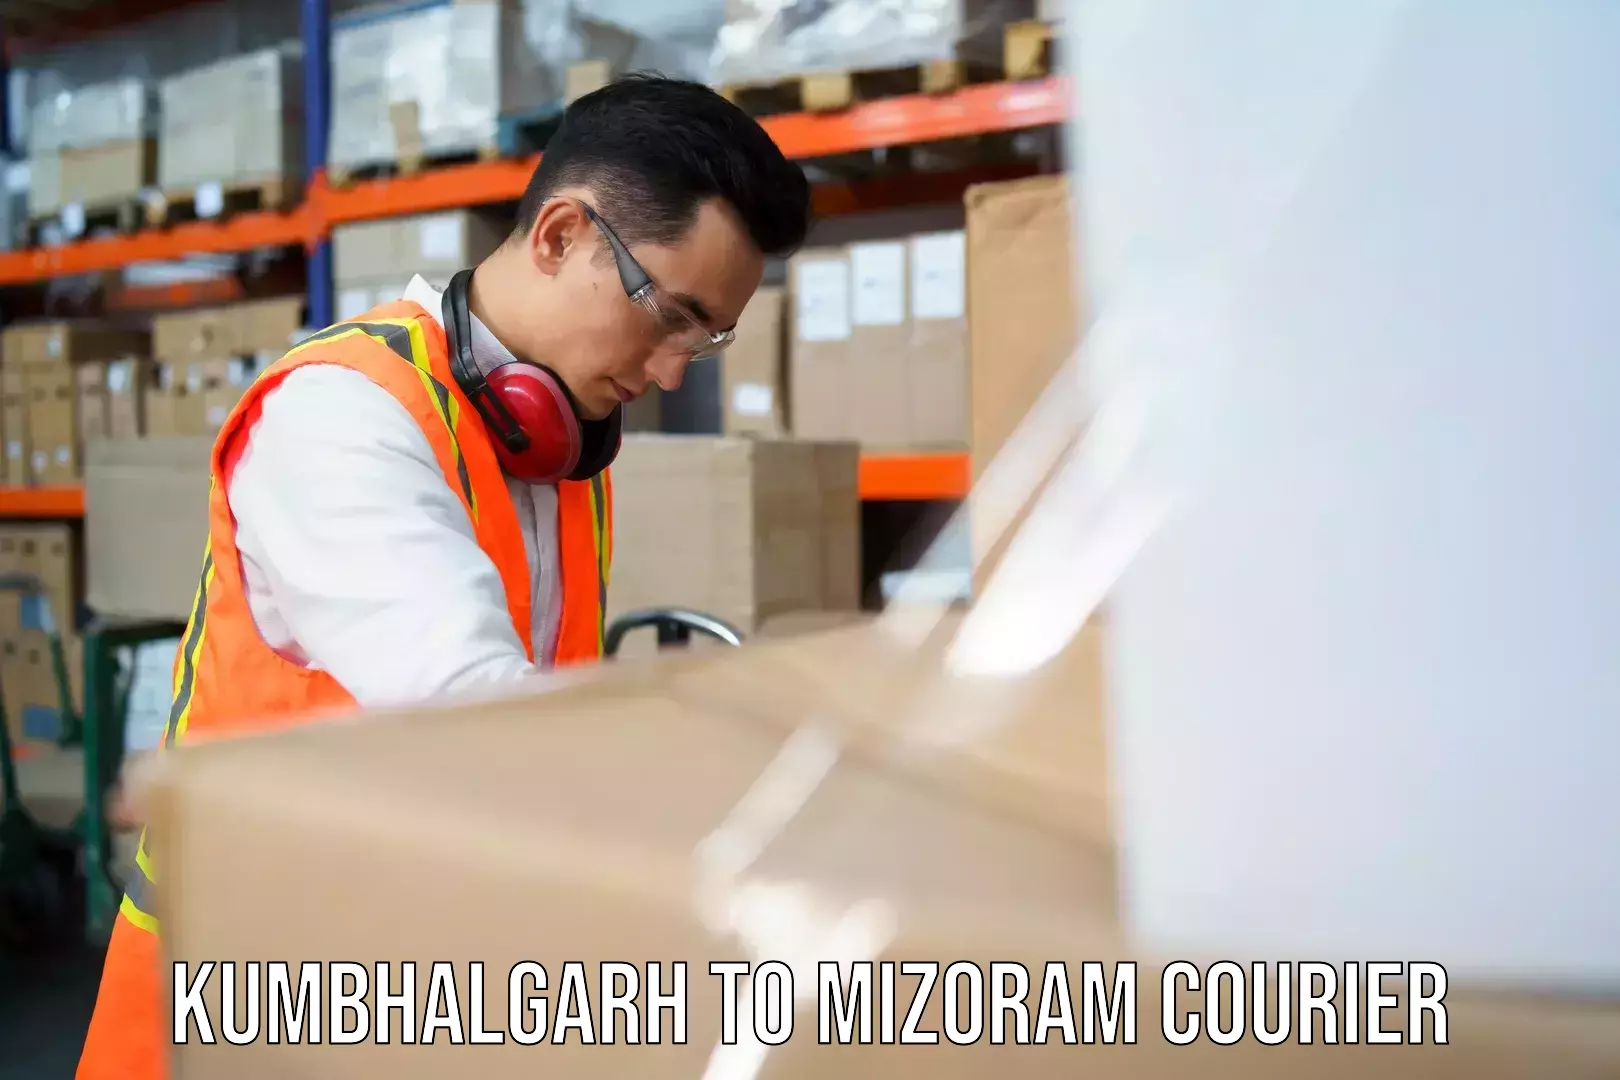 Customer-centric shipping Kumbhalgarh to Siaha